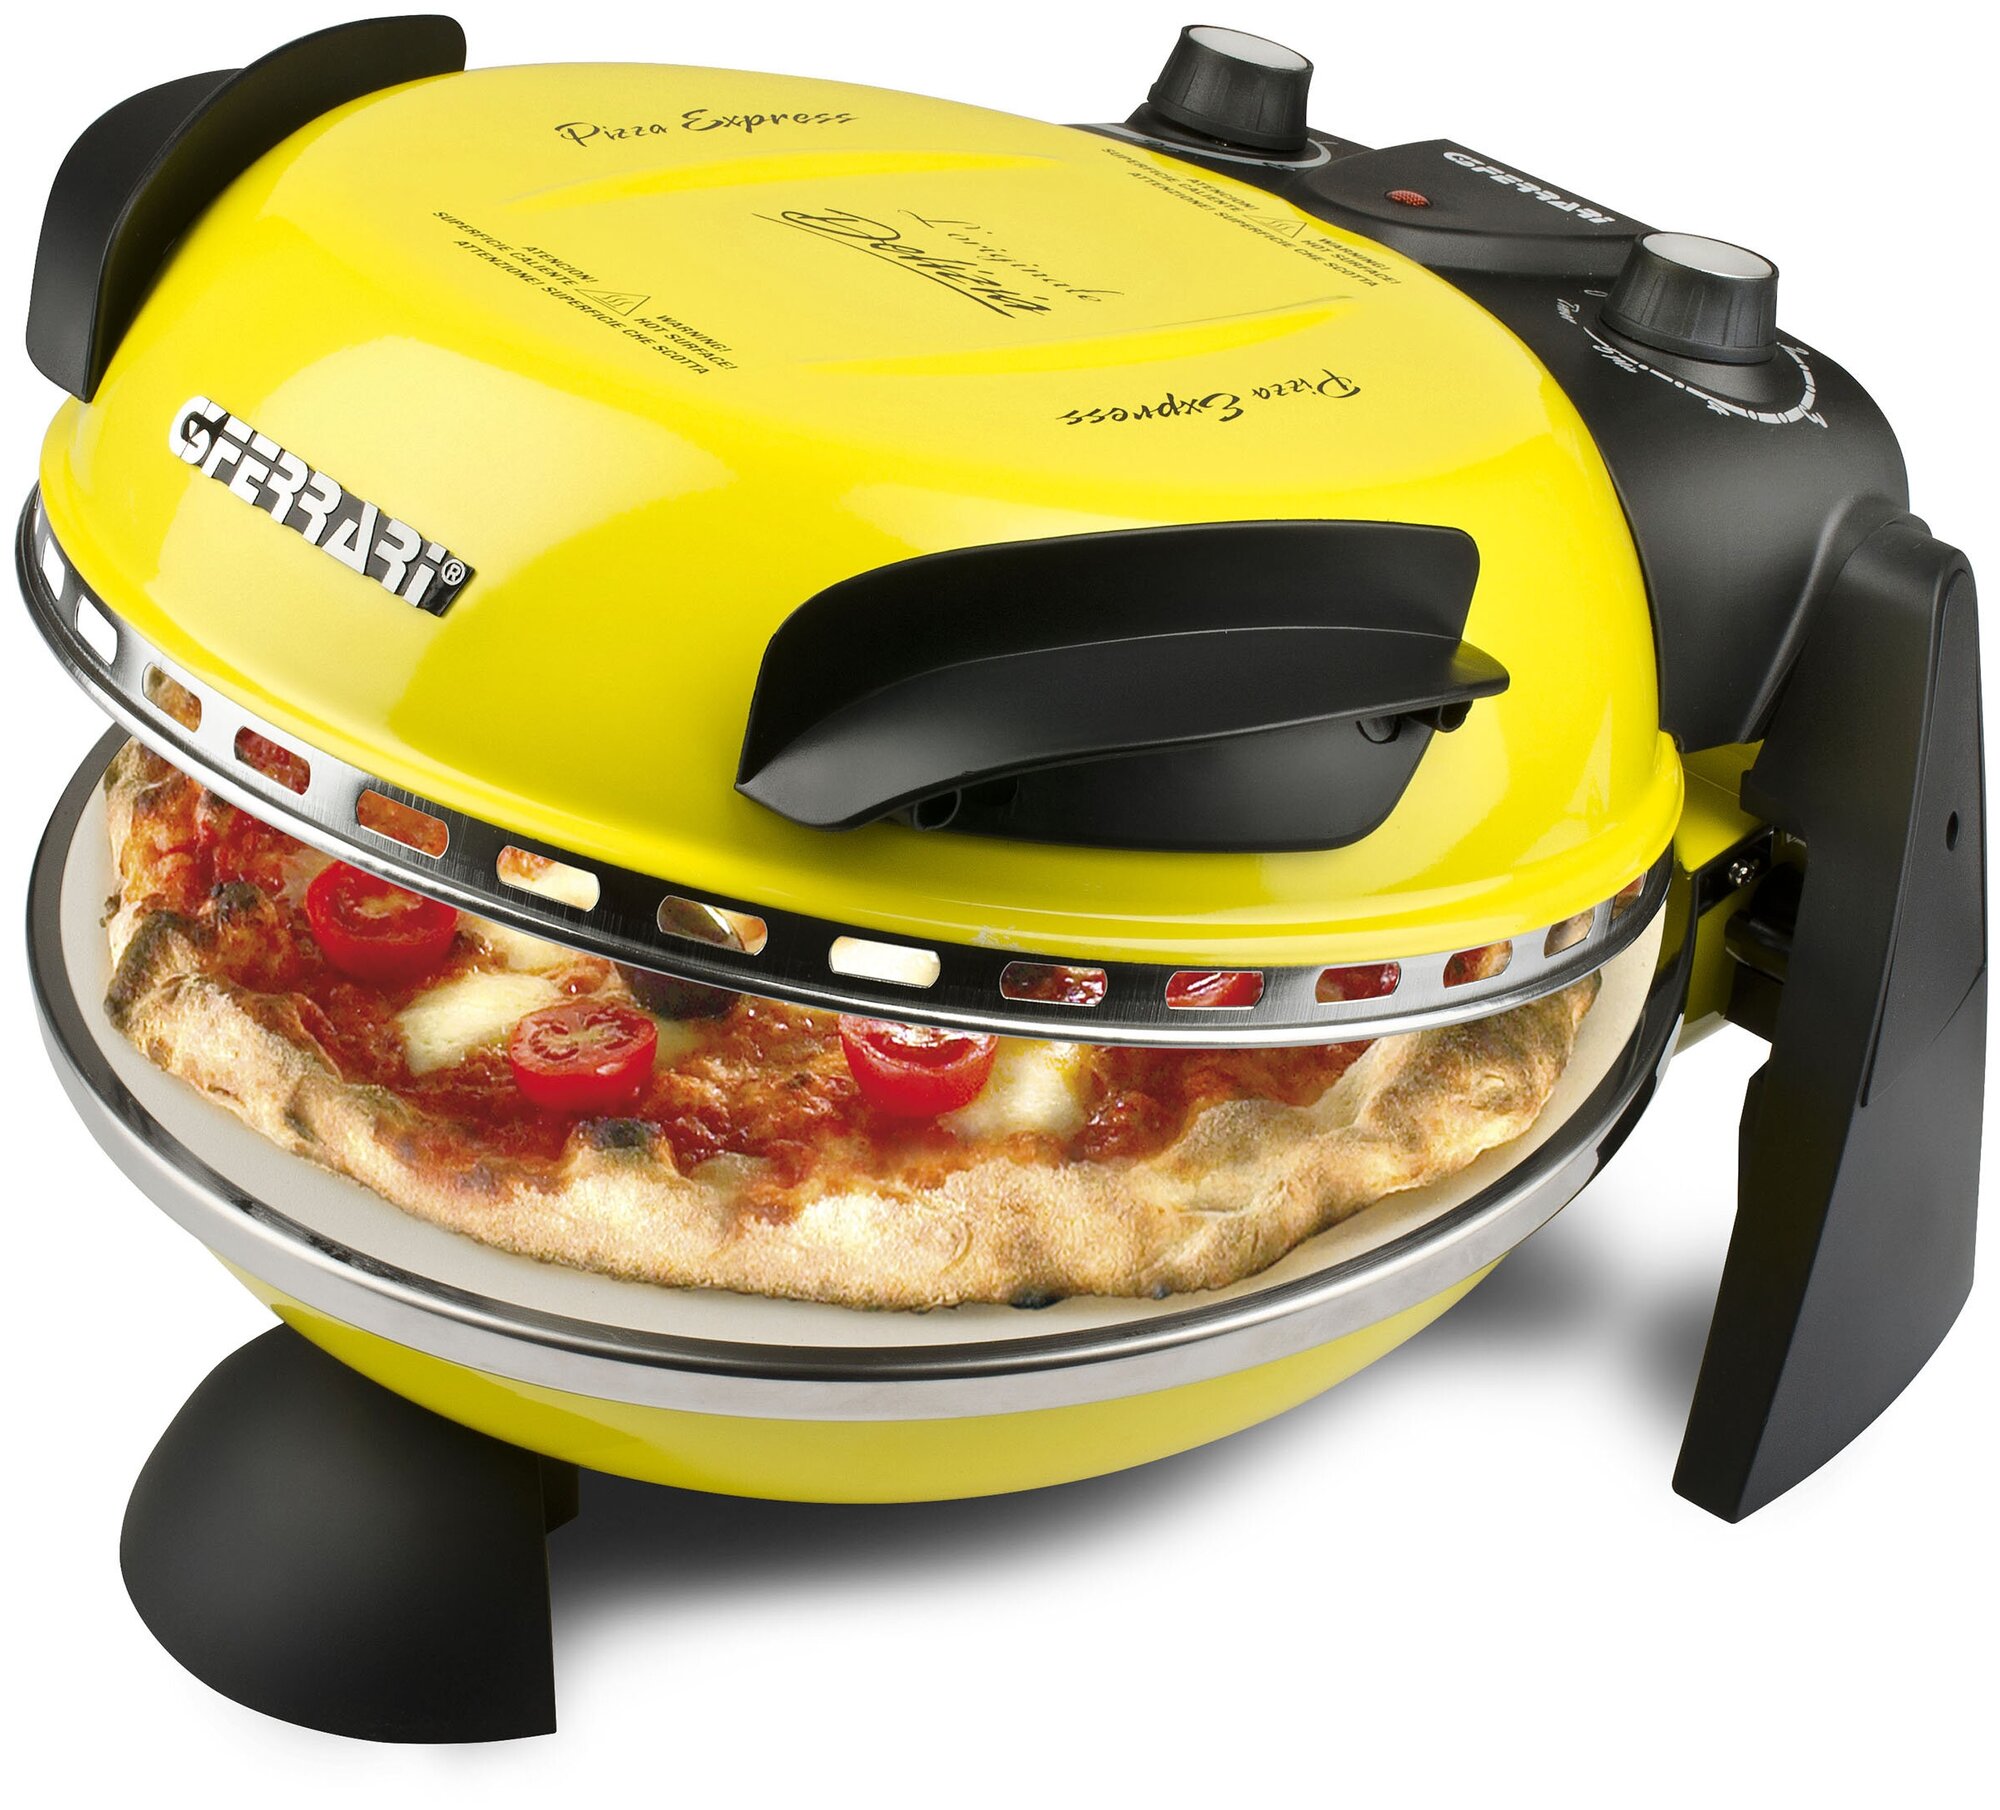 Пицца-мейкер G3 ferrari Delizia G10006 мини печь для пиццы электрическая, жёлтая